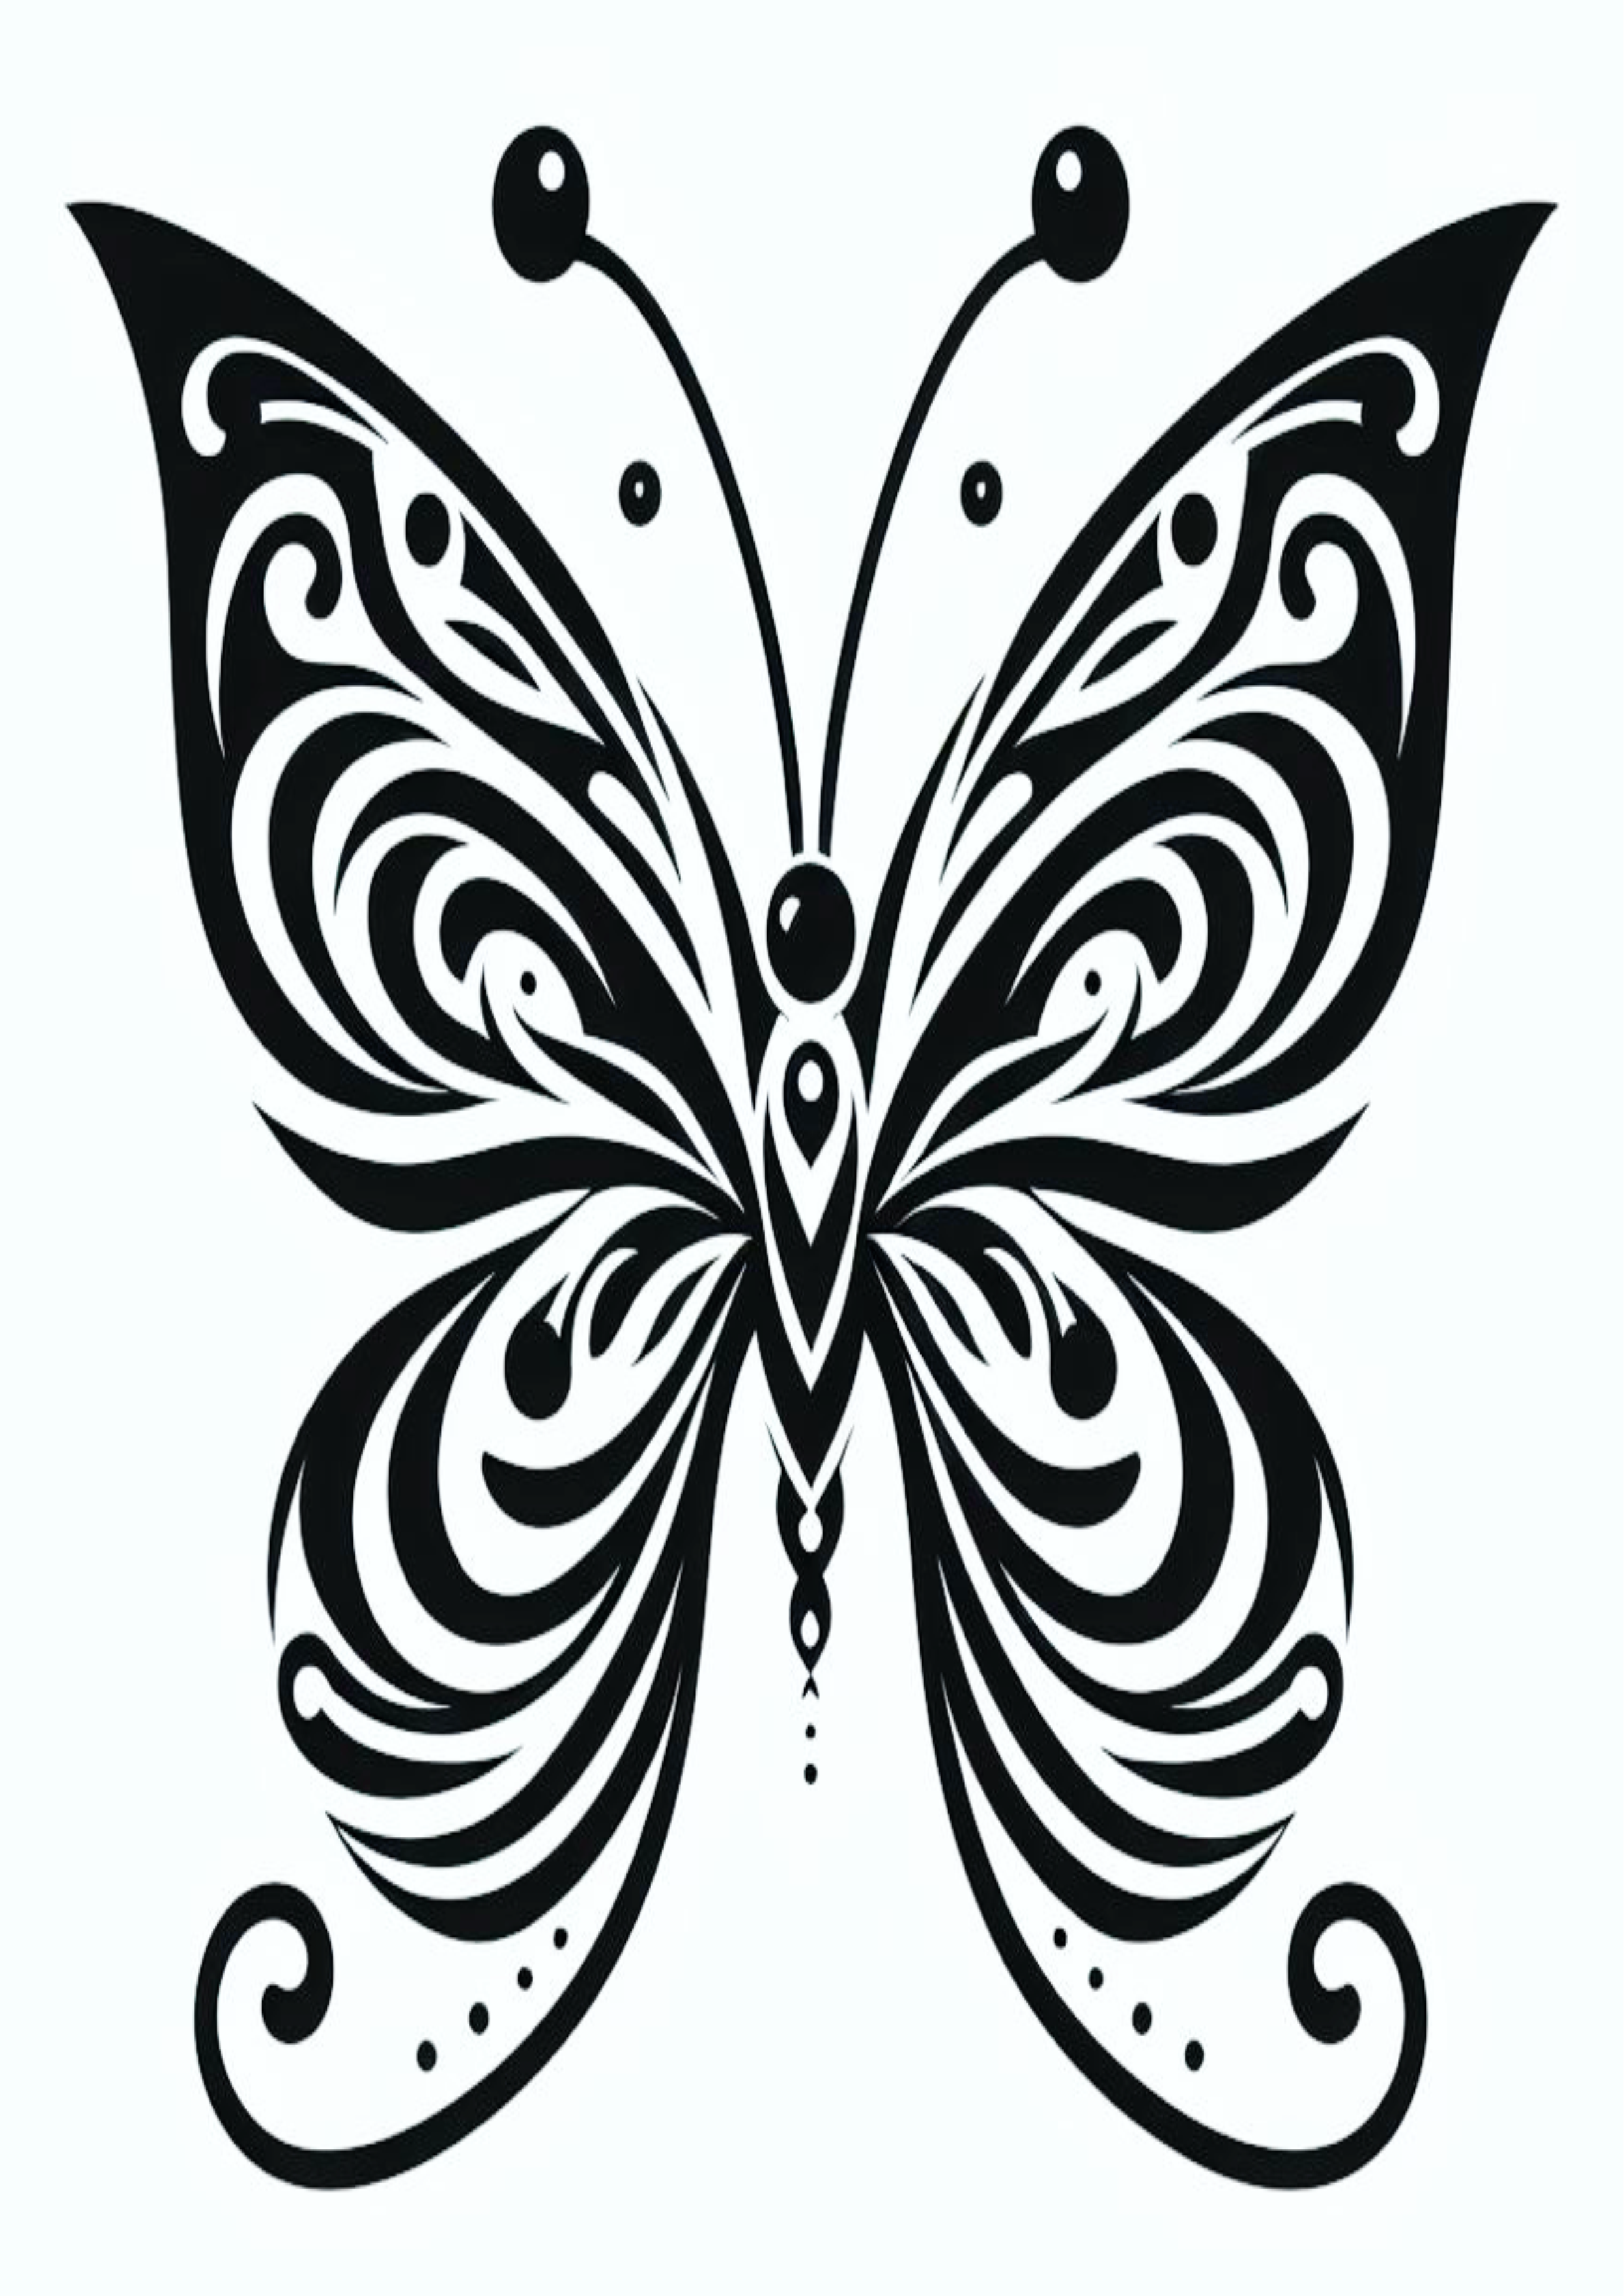 Borboleta tatuagem feminina minimalista traços png image desenho grátis